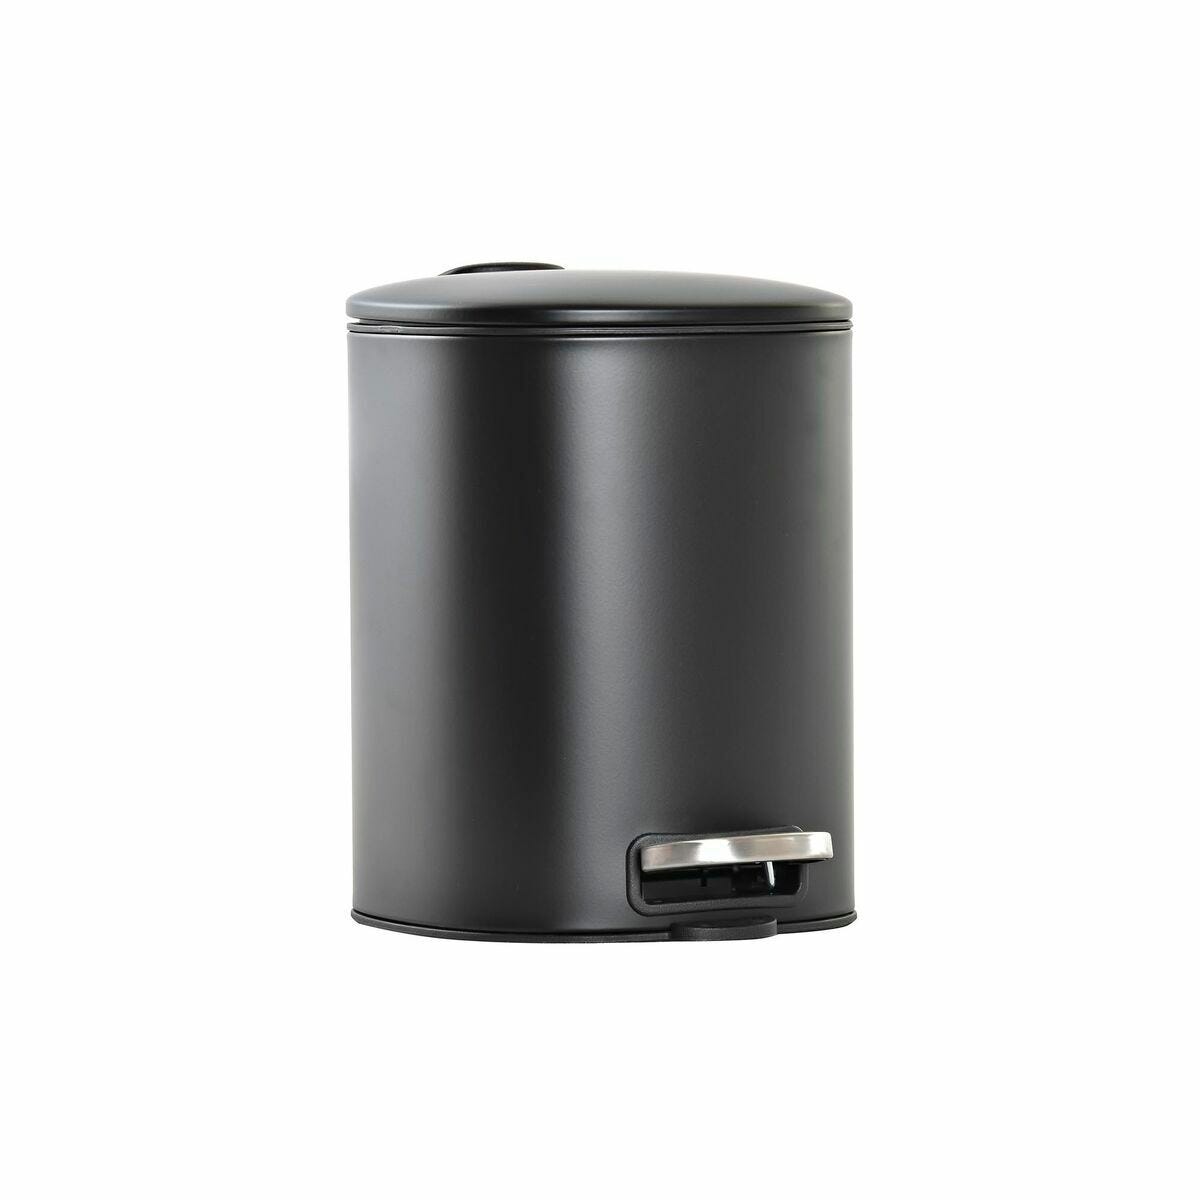 Cubo de basura 40 litros en 3 compartimentos color negro 20 x 12 x 12 cm en  plástico 